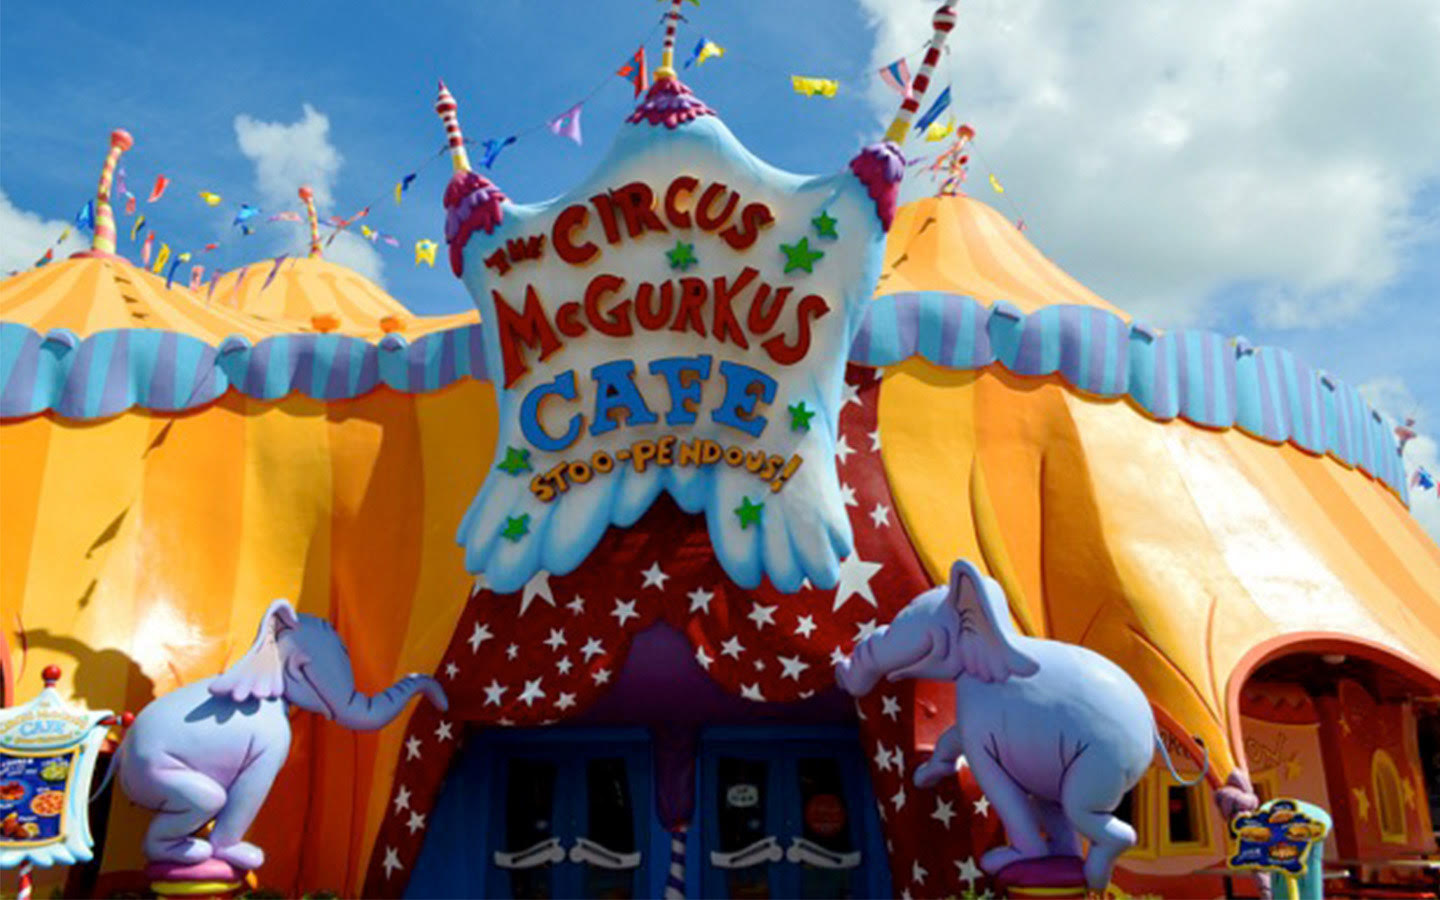 Circus McGukus Cafe- Seuss Landing